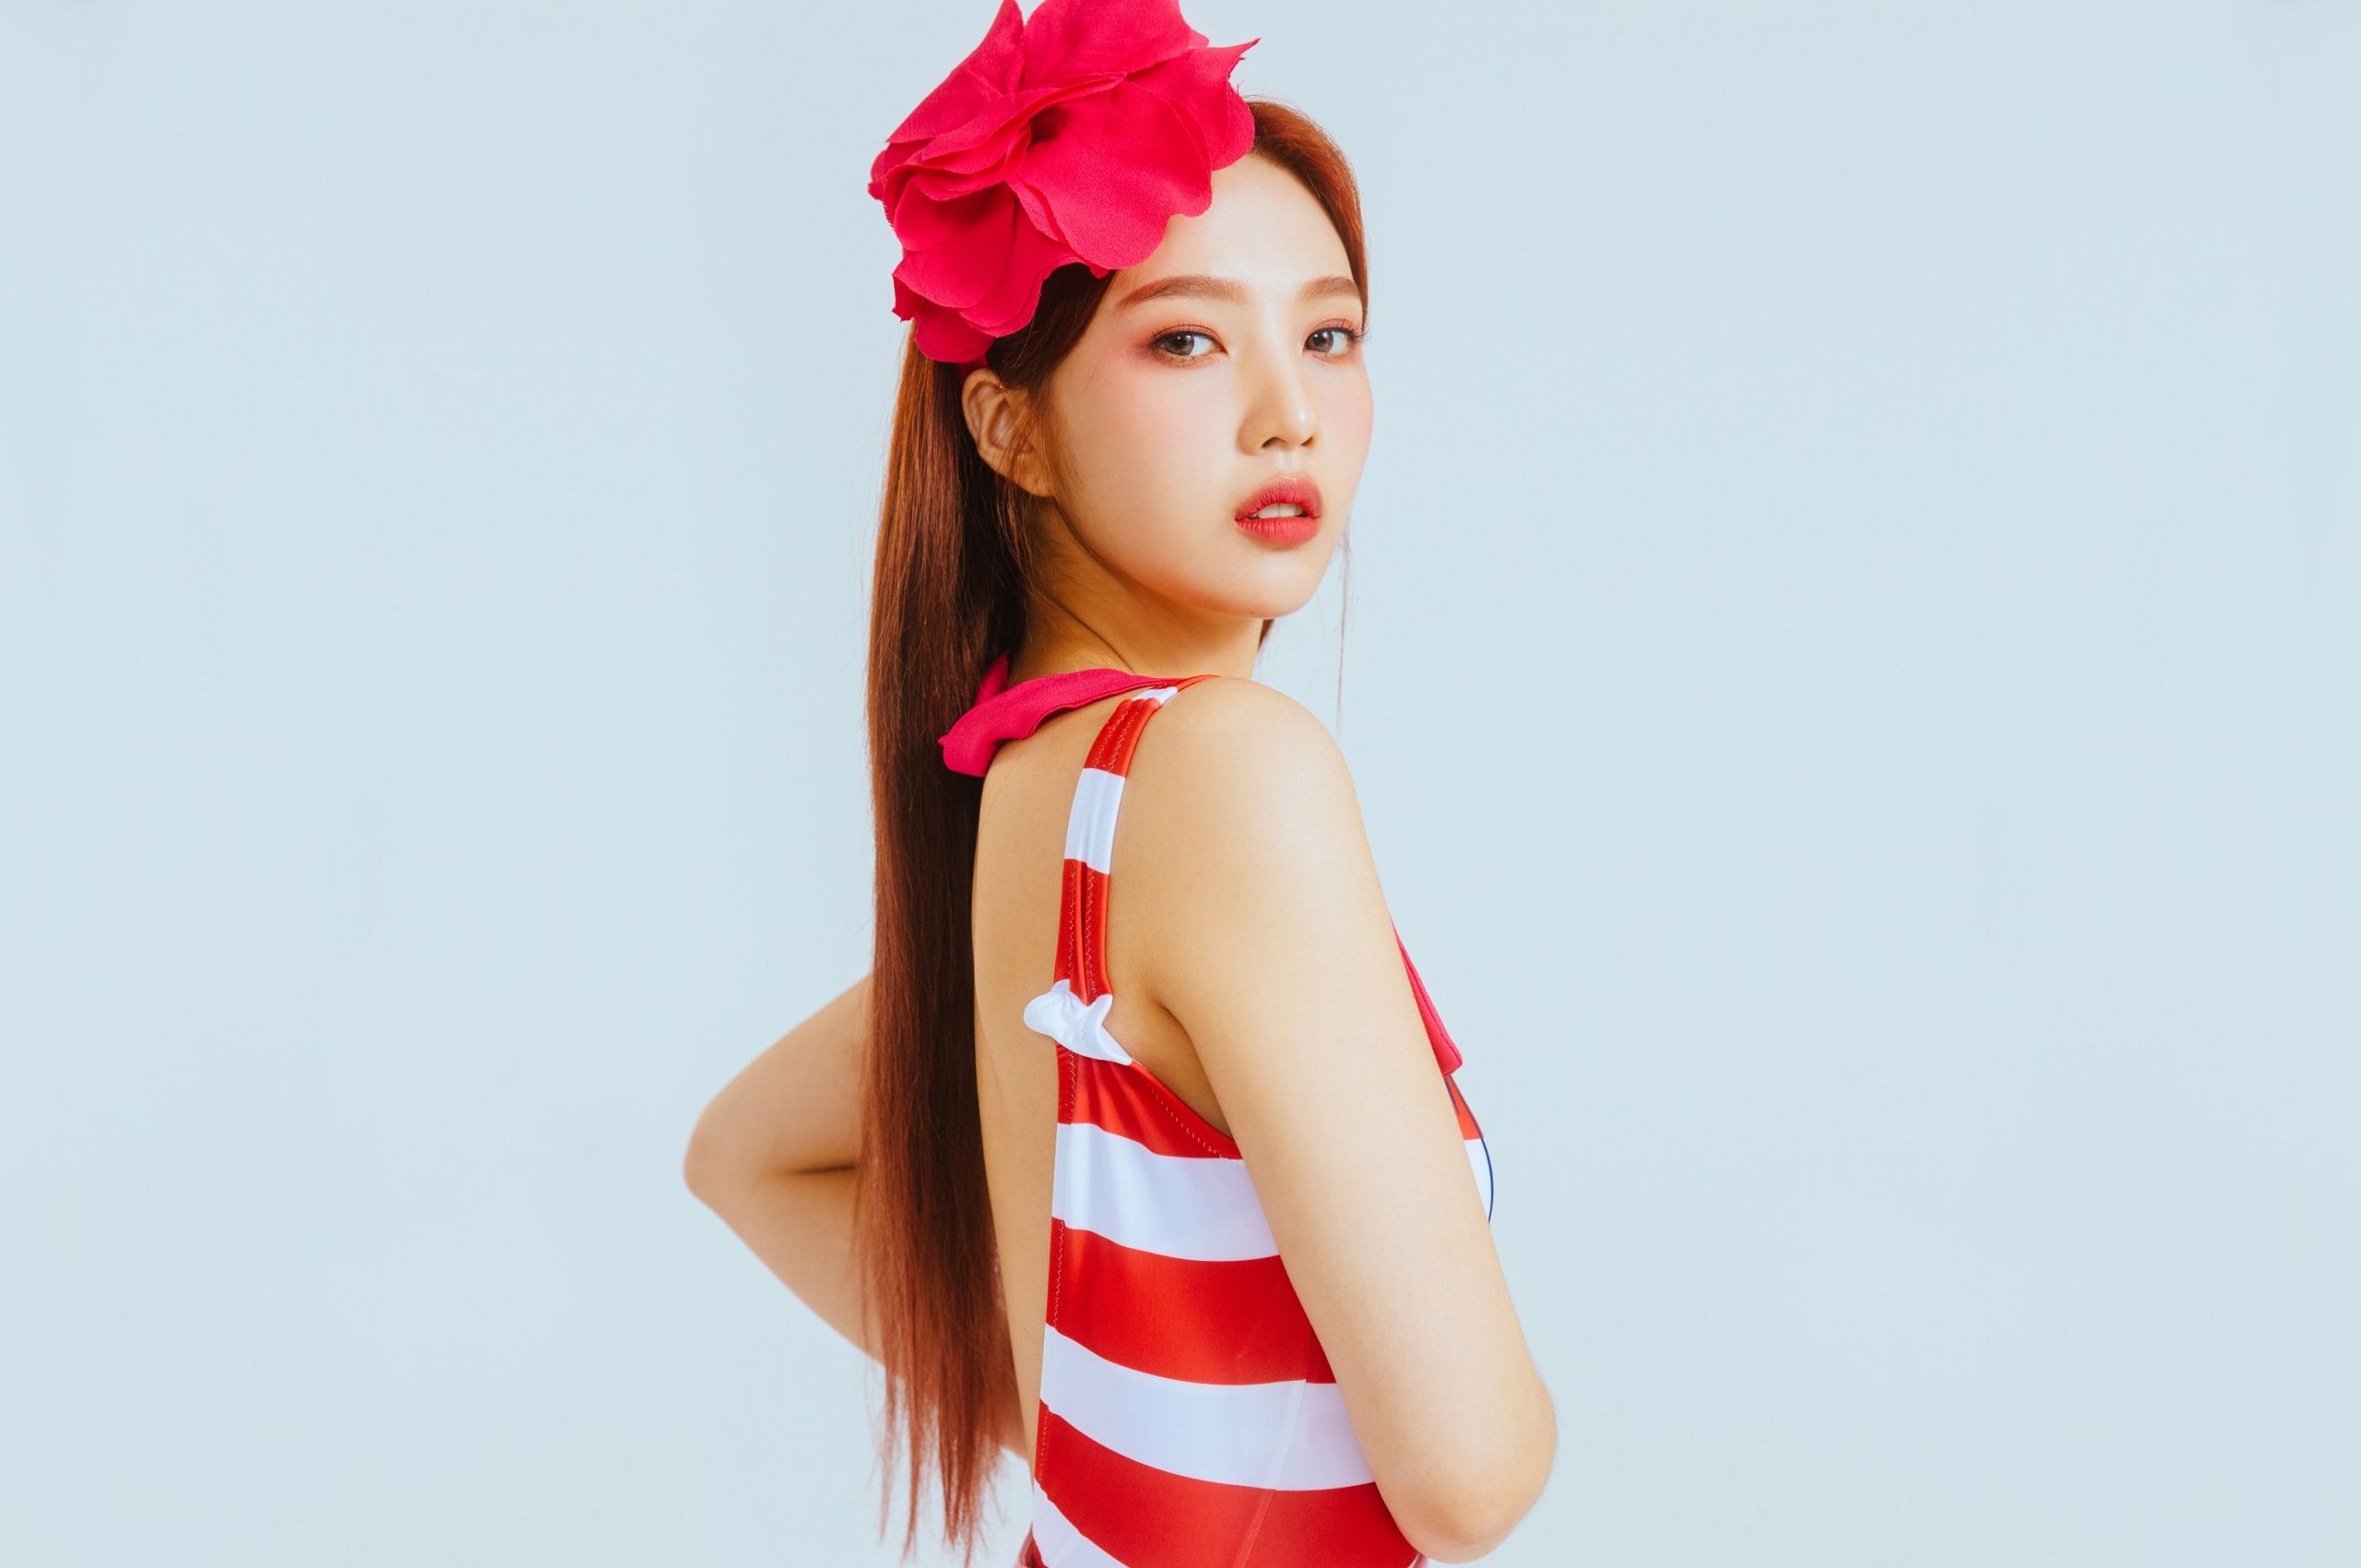 Free download Red Velvet Power Up Summer Magic 4K 8K HD Wallpaper [3840x2160] for your Desktop, Mobile & Tablet. Explore Red Velvet Joy Wallpaper. Red Velvet Joy Wallpaper, Joy